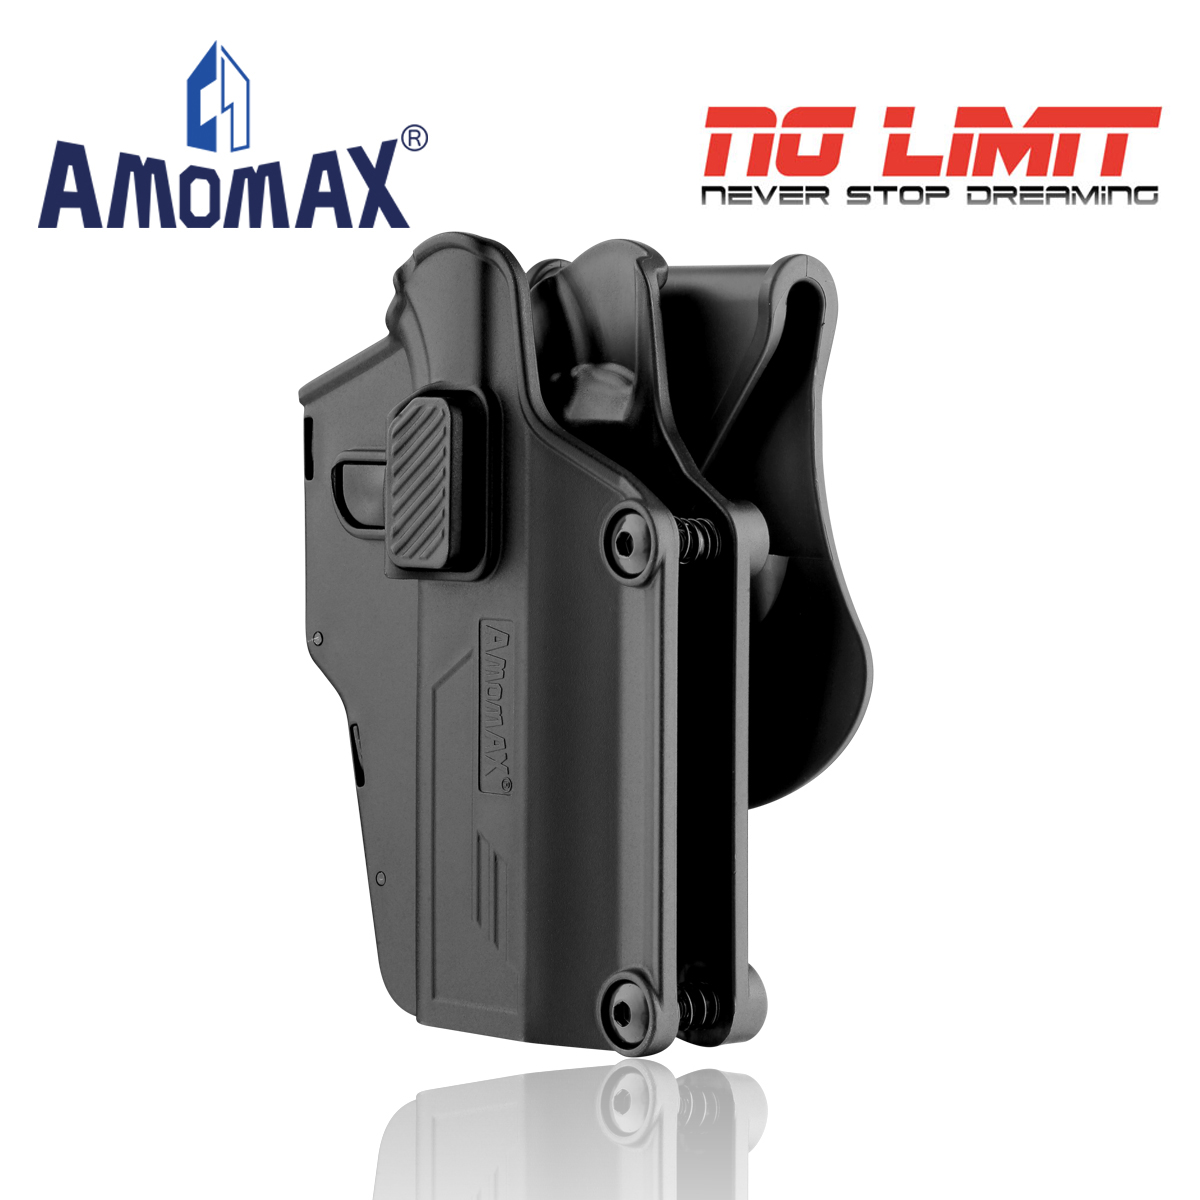 ซองปืน ปลดไว Amomax รุ่น (am-Uh) Multi-Fit Holster ซองแข็ง กันน้ำ ทำจาก Polymer รองรับปืนได้มากกว่า 80 โมเดล ปรับขนาดได้ ซองปรับได้ 360 องศา. 